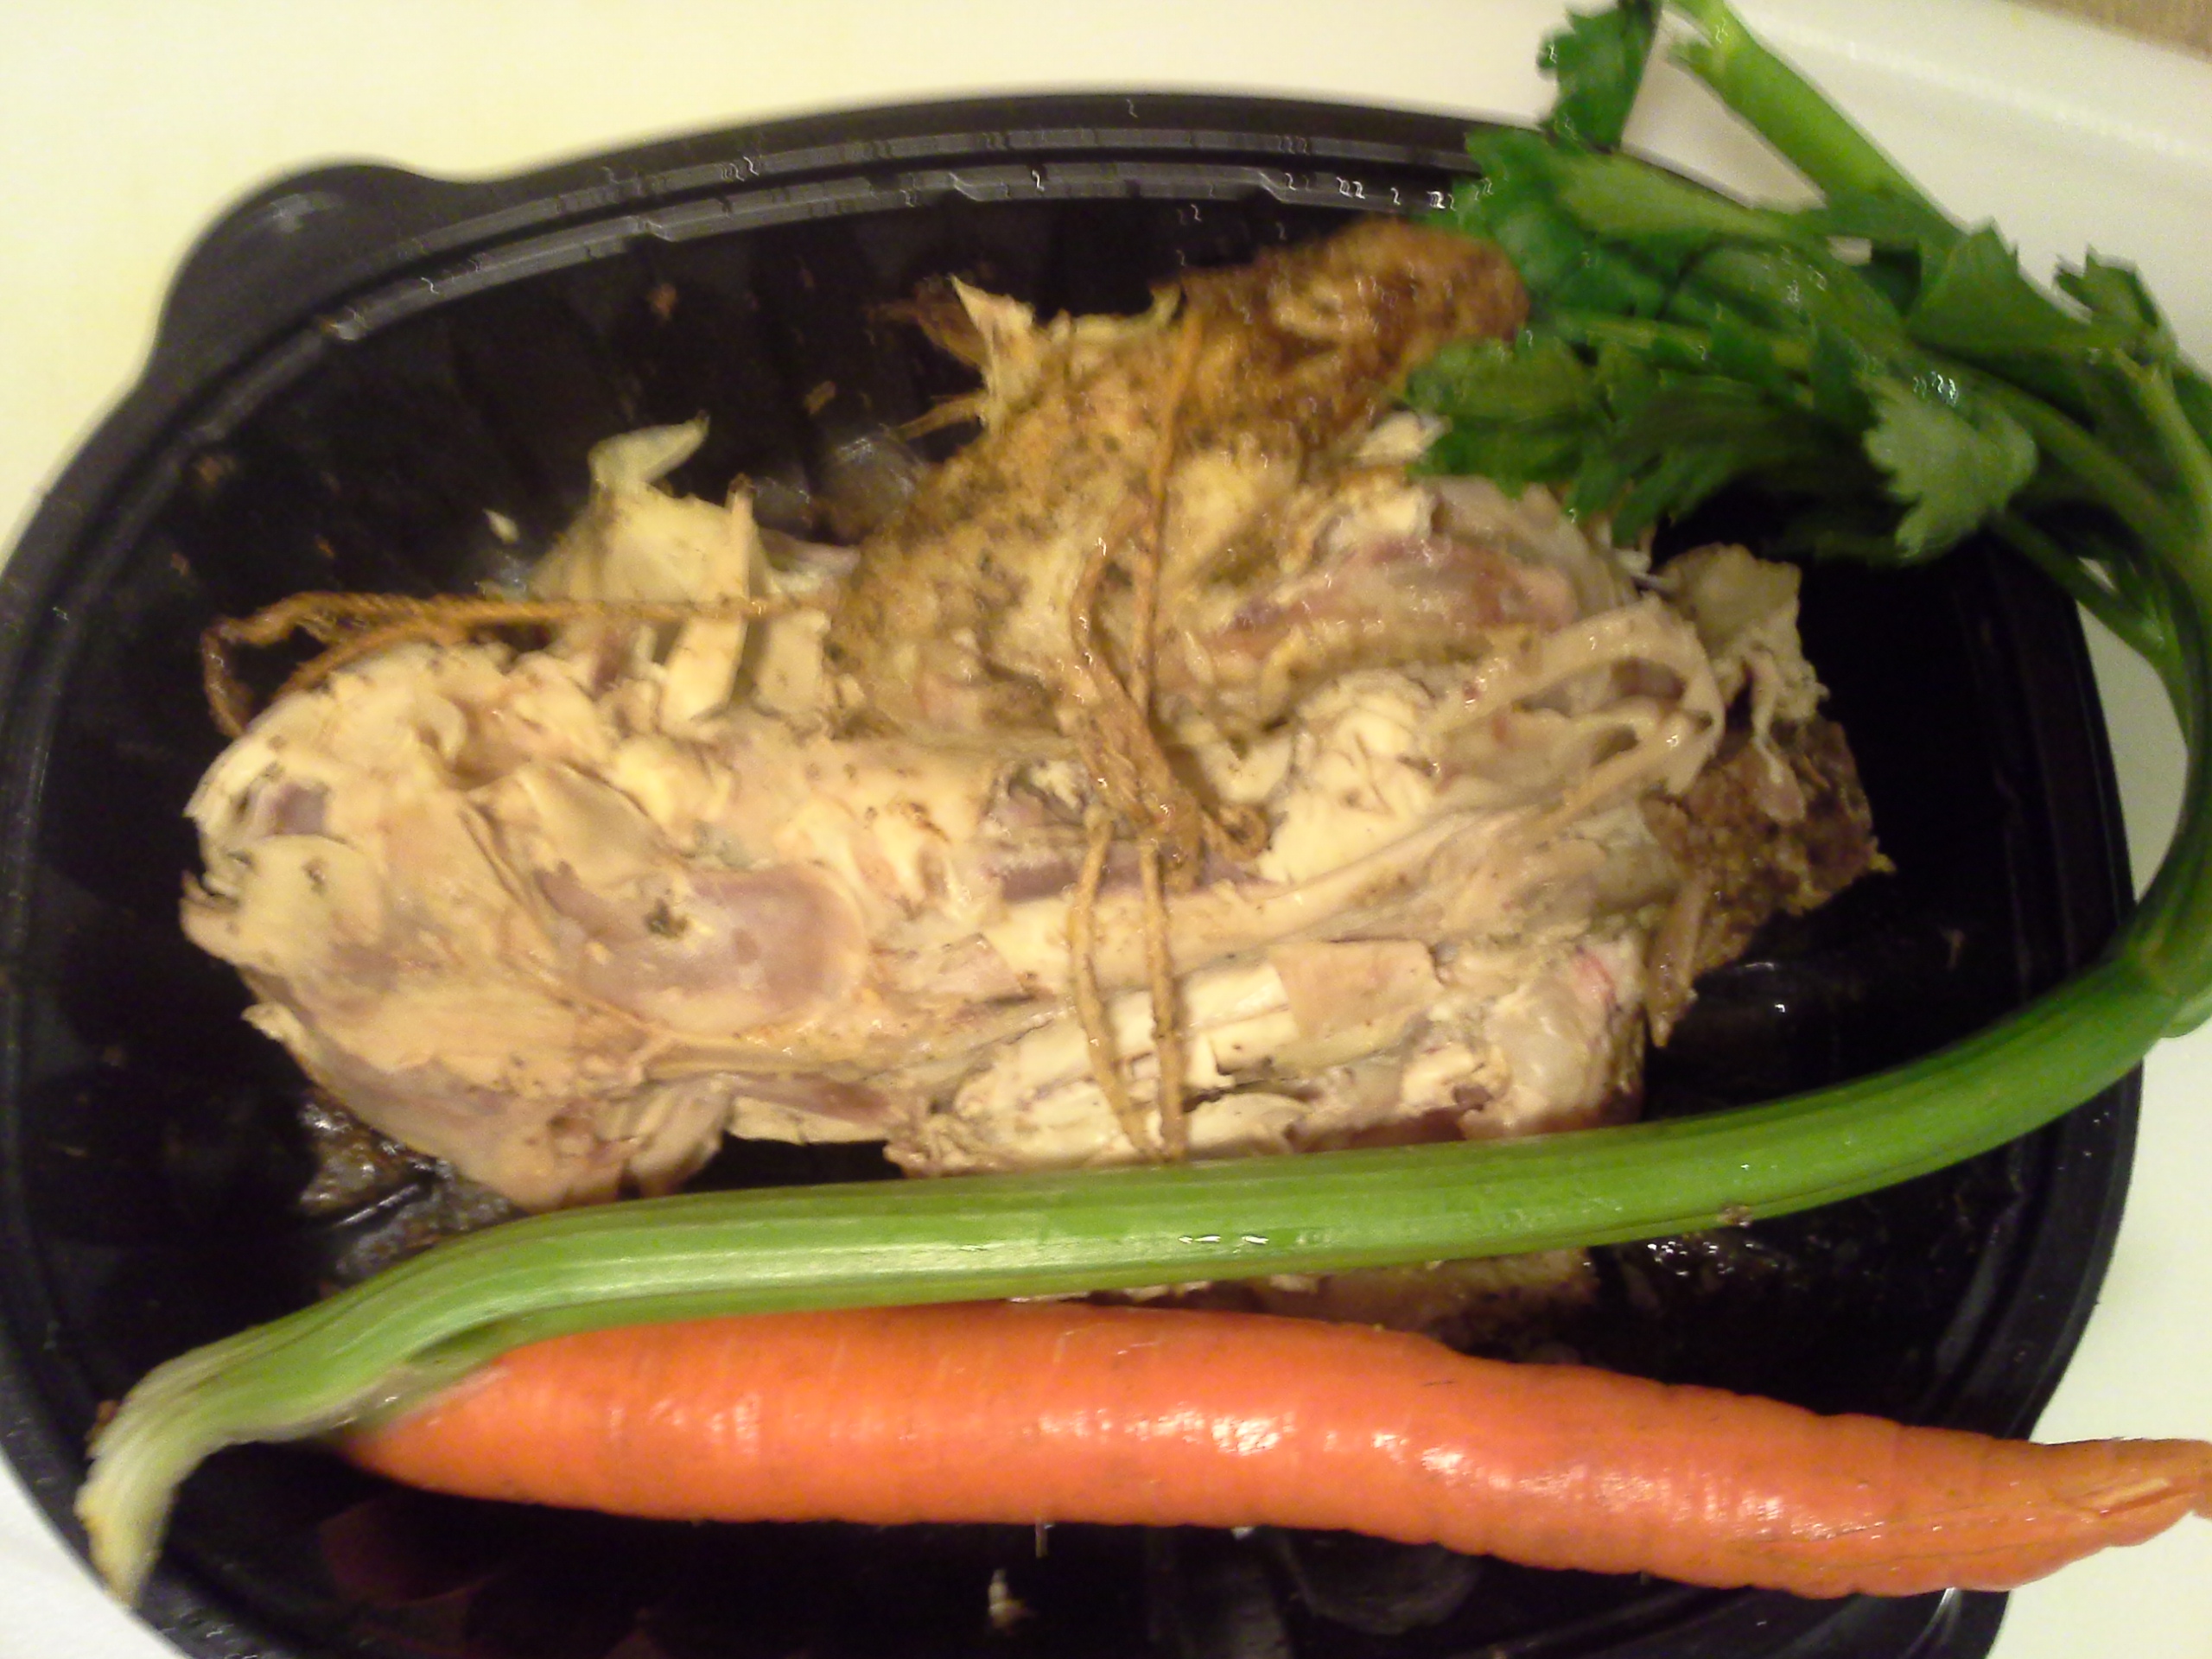 Dinner: 8:20 p.m. | Leftover rotisserie chicken, 1 carrot, 1 stalk celery